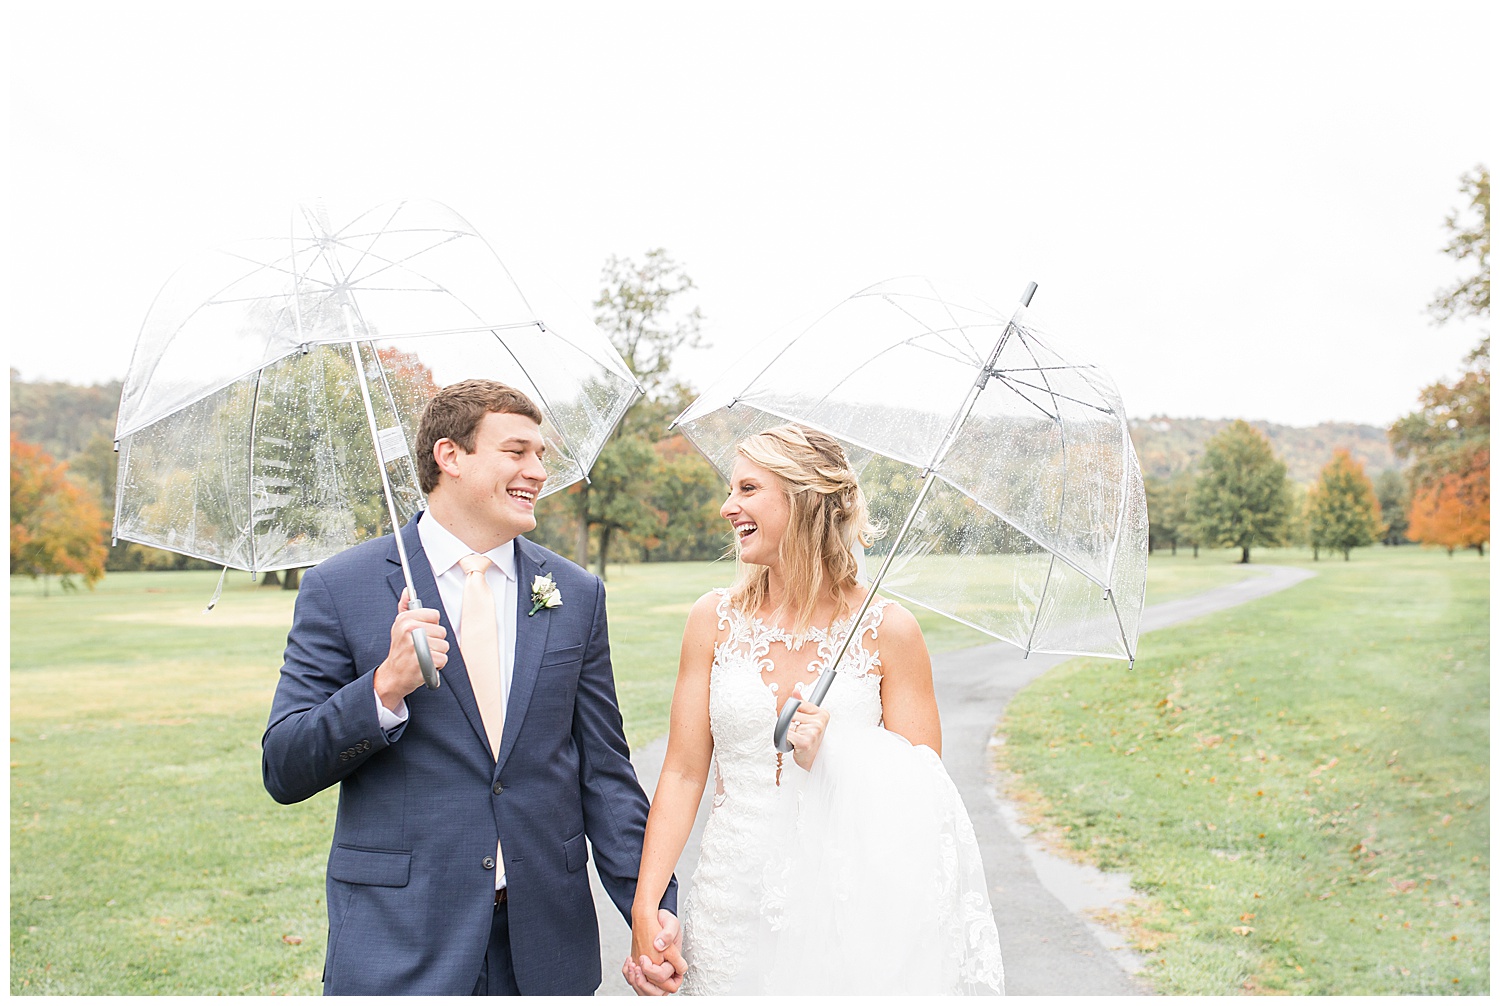 Rainy Cincinnati Wedding - Golf Course Wedding - Fall Wedding - Twin Oaks Golf and Plantation Club Wedding